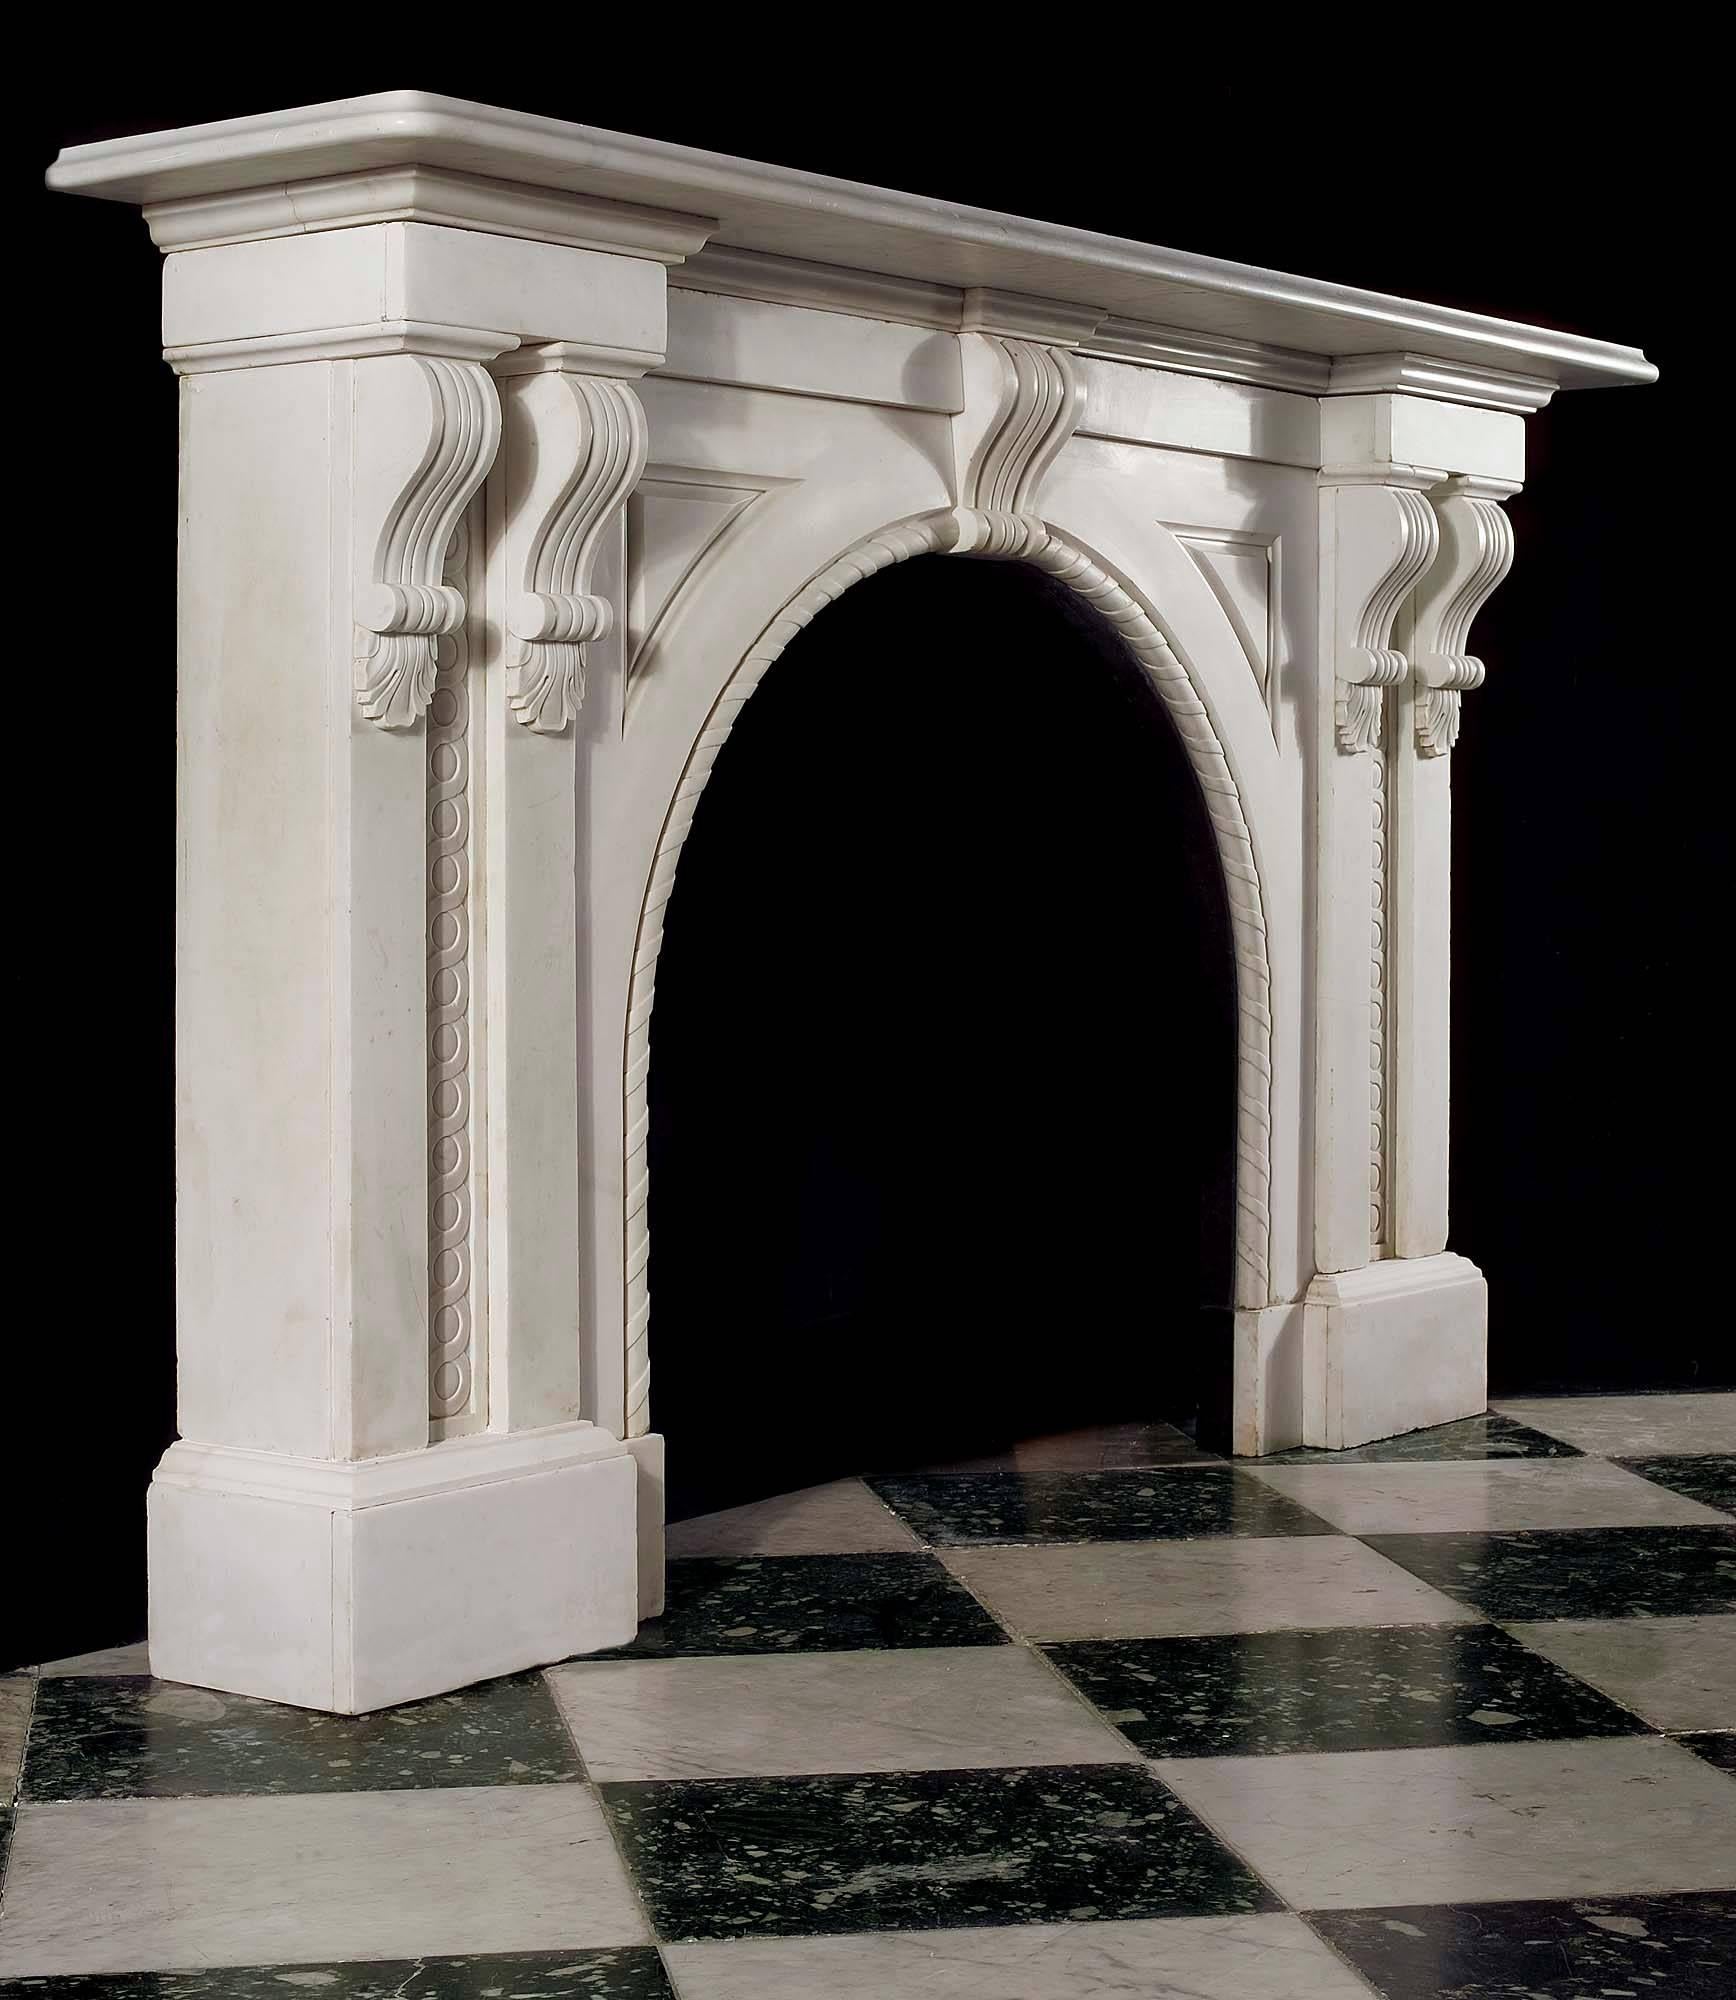 Ein großer und imposanter viktorianischer Gewölbekamin aus weißem italienischem Marmor. Das massive, schlicht geformte Regal wird von zwei verschnörkelten Konsolen getragen, die auf beiden Seiten in zwei Pilastern mit geschnitzten Guilloche-Motiven